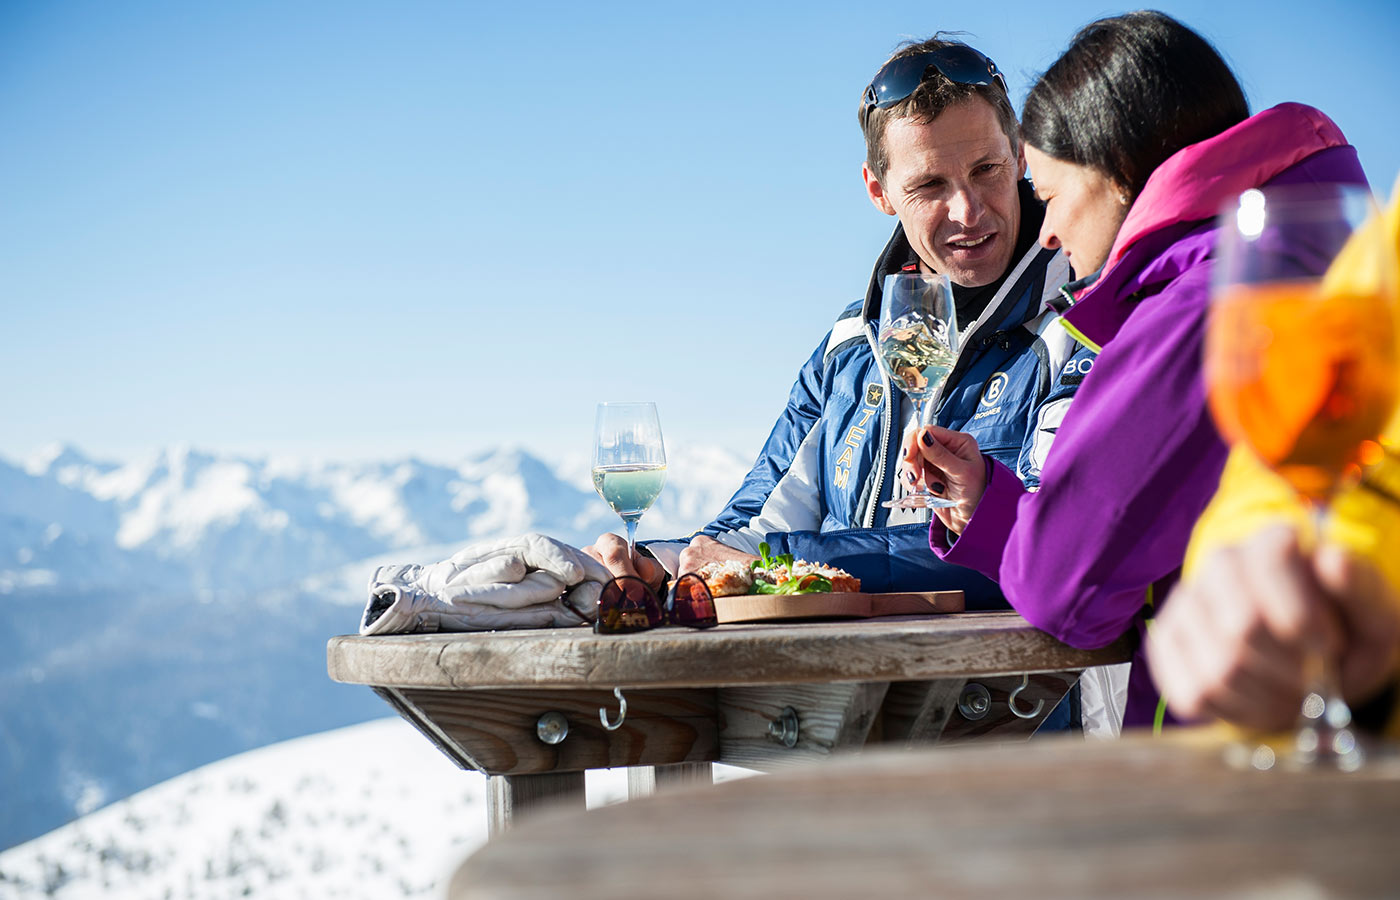 aperitivo in una baita di montagna in una splendida giornata invernale col cielo azzurro